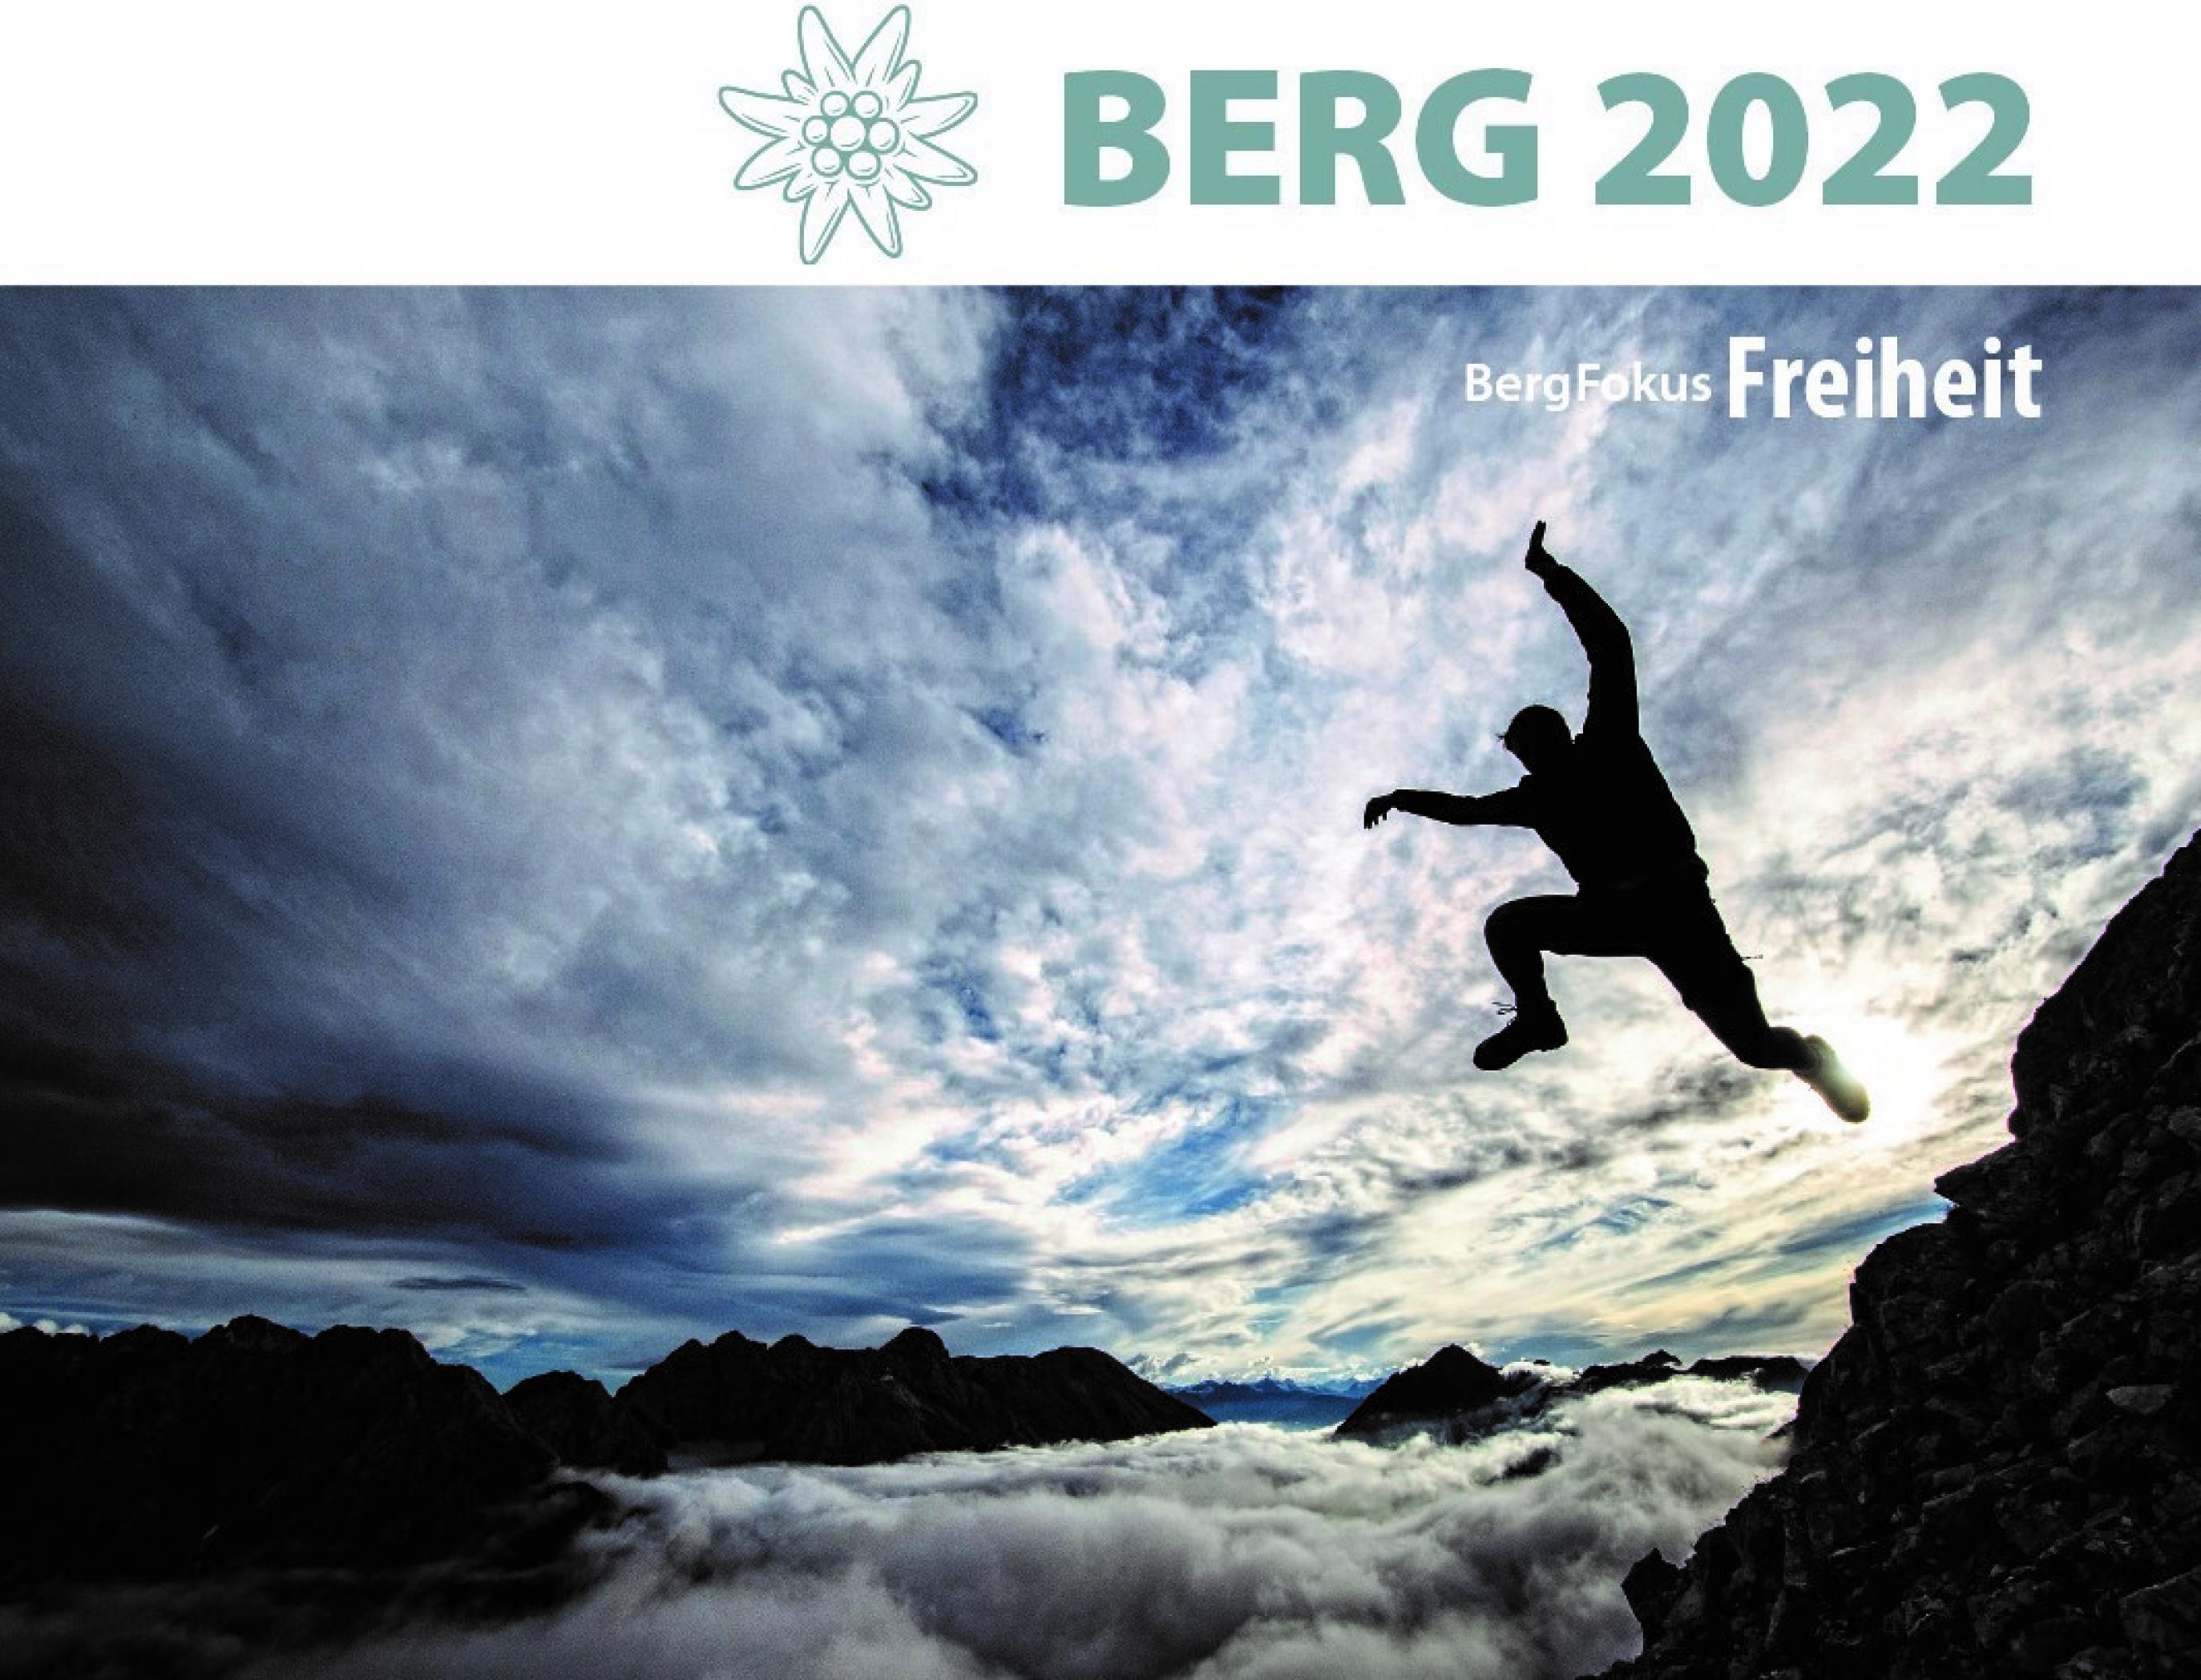 Über dem Foto eines scheinbar vom Berg in ein Wolkenmeer springendenen Bergsteigers prangt das Edelweiß-Logo des Alpenvereins sowie der Schriftzug BERG 20222.